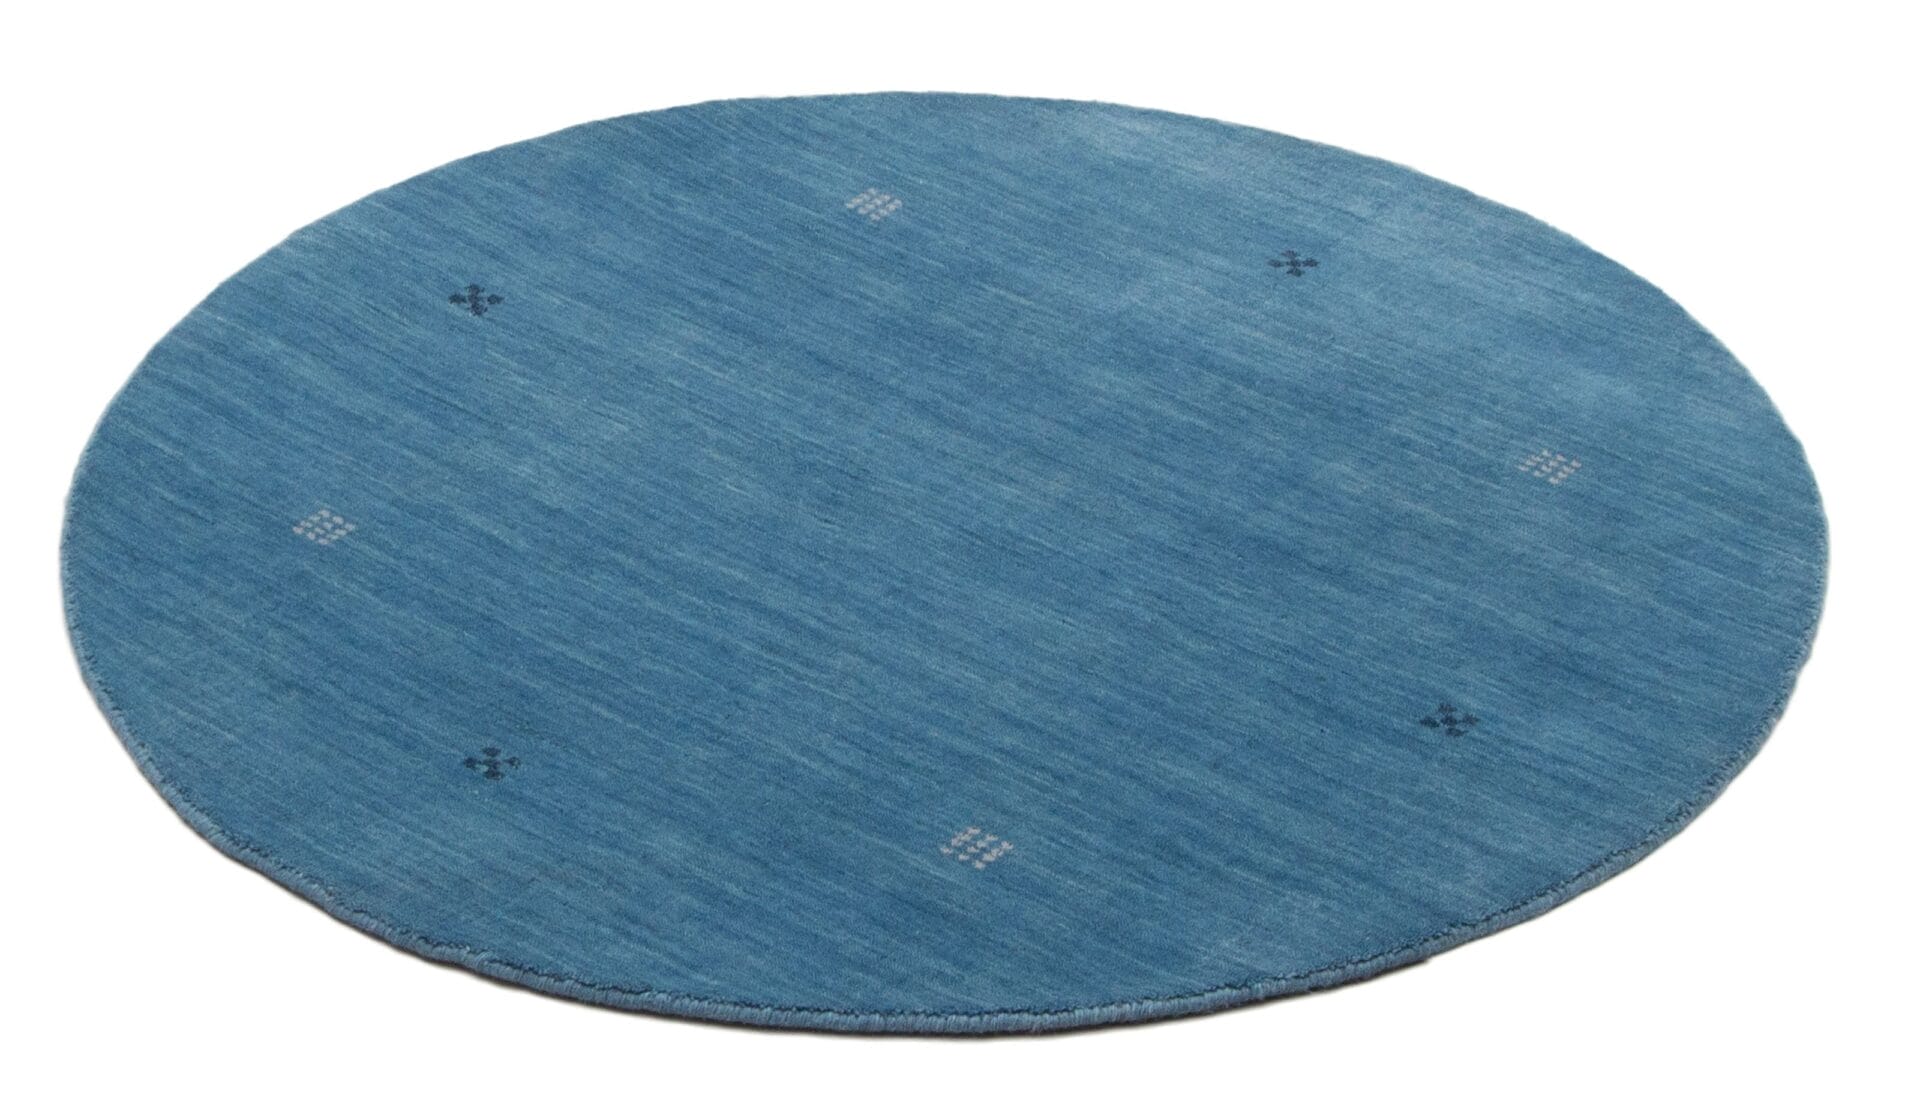 Beschrijving: Een blauw tapijt met een cirkel in het midden.